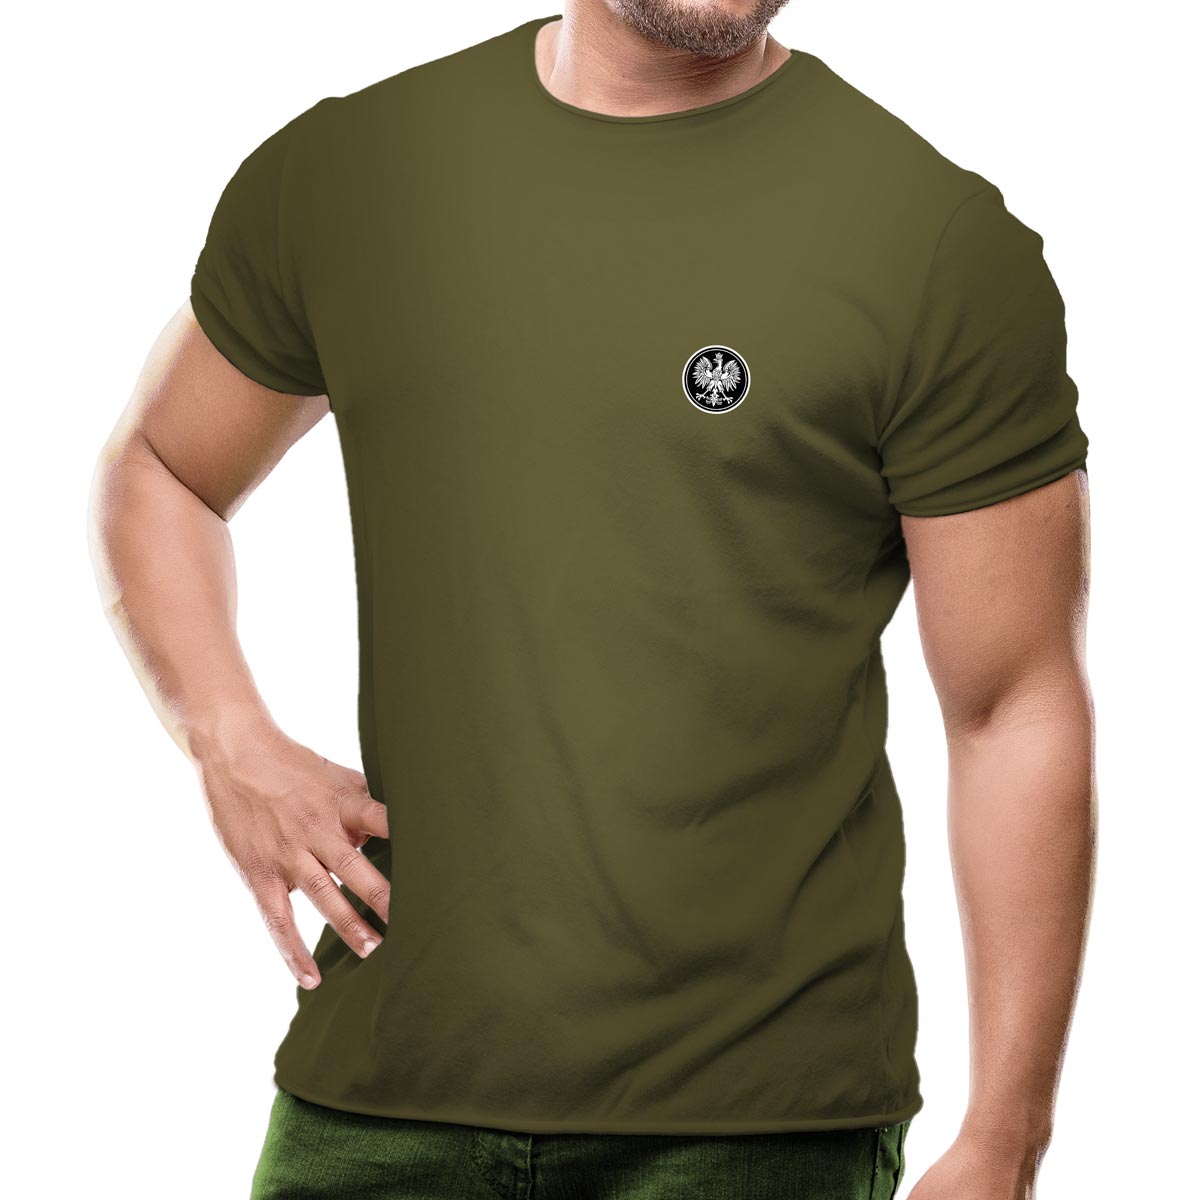 męska koszulka patriotyczna koszulka z orłem zielona khaki wojskowa